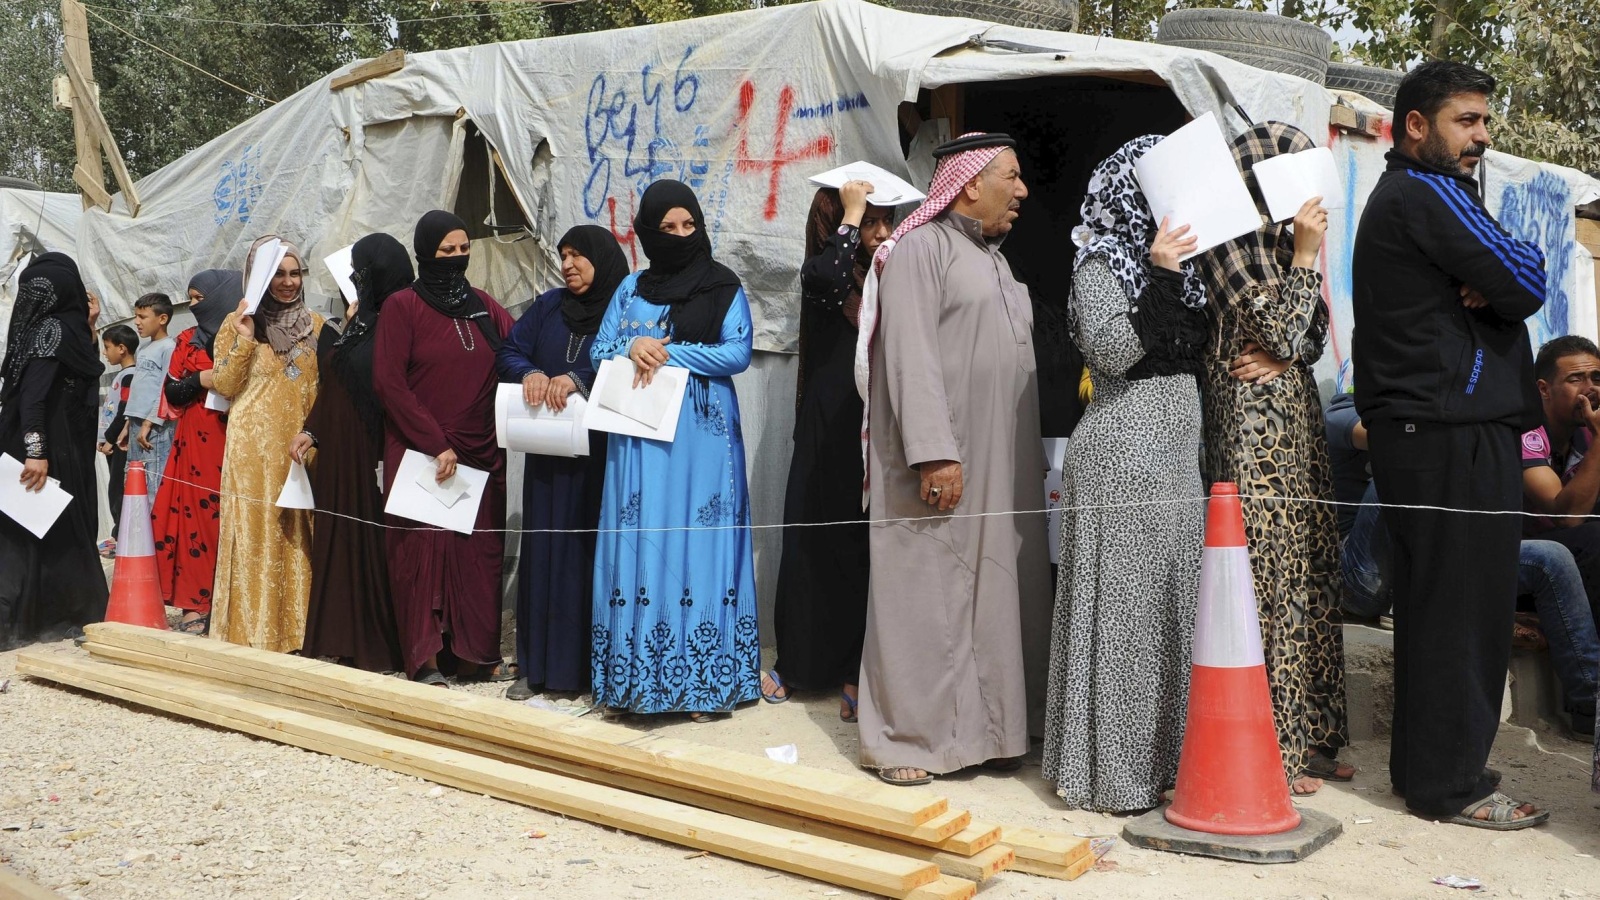 ‪لاجئون سوريون في طابور لتلقي المساعدات في مخيم بوادي البقاع اللبناني‬ (رويترز)